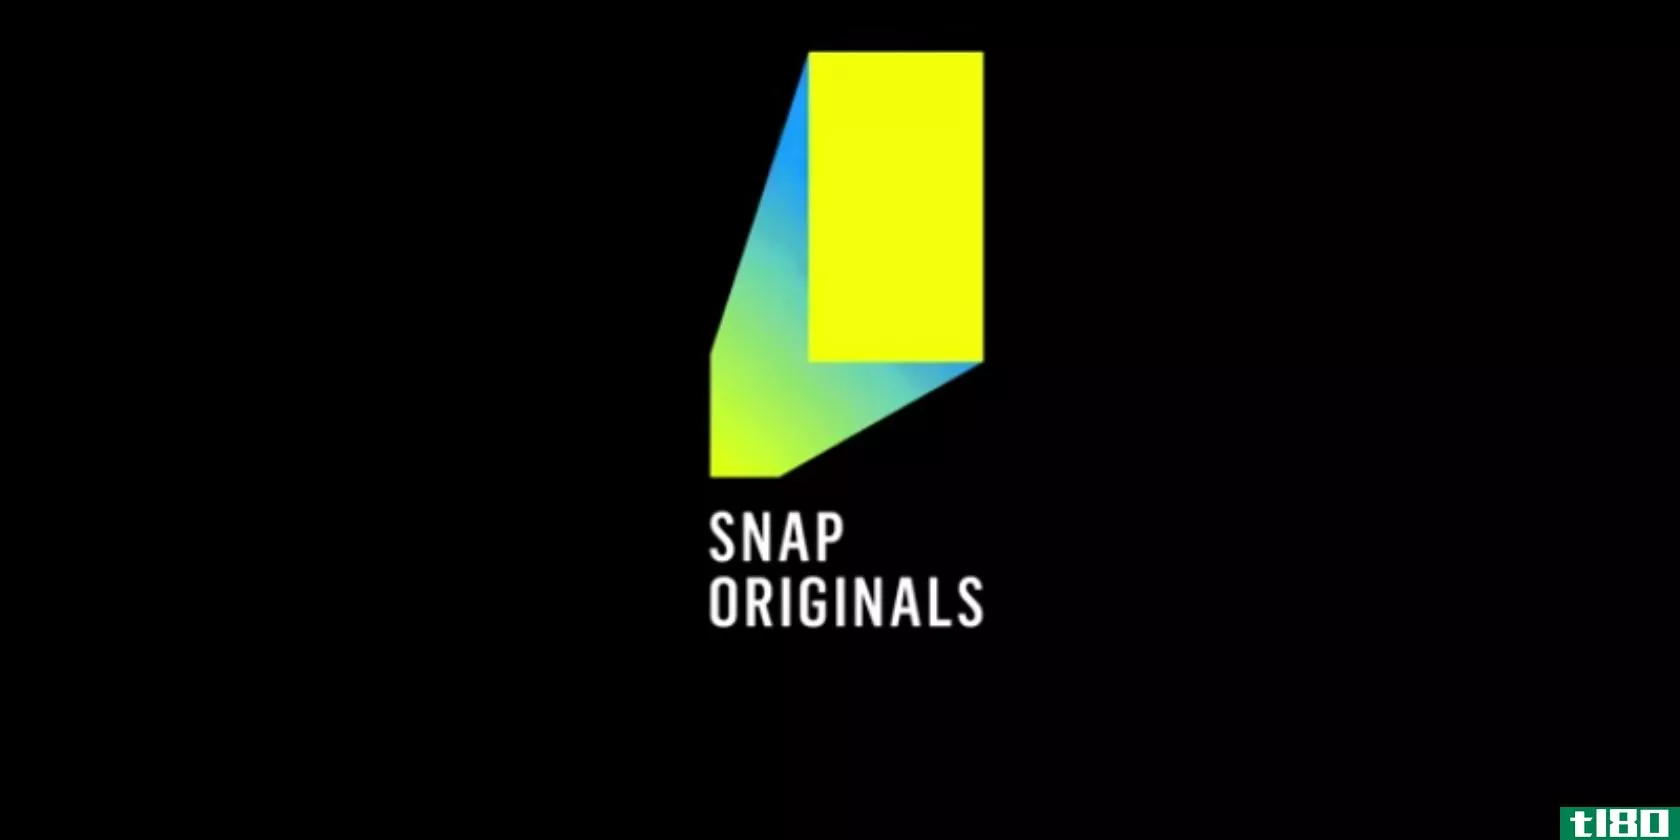 snap originals是简短的snapchat电视节目